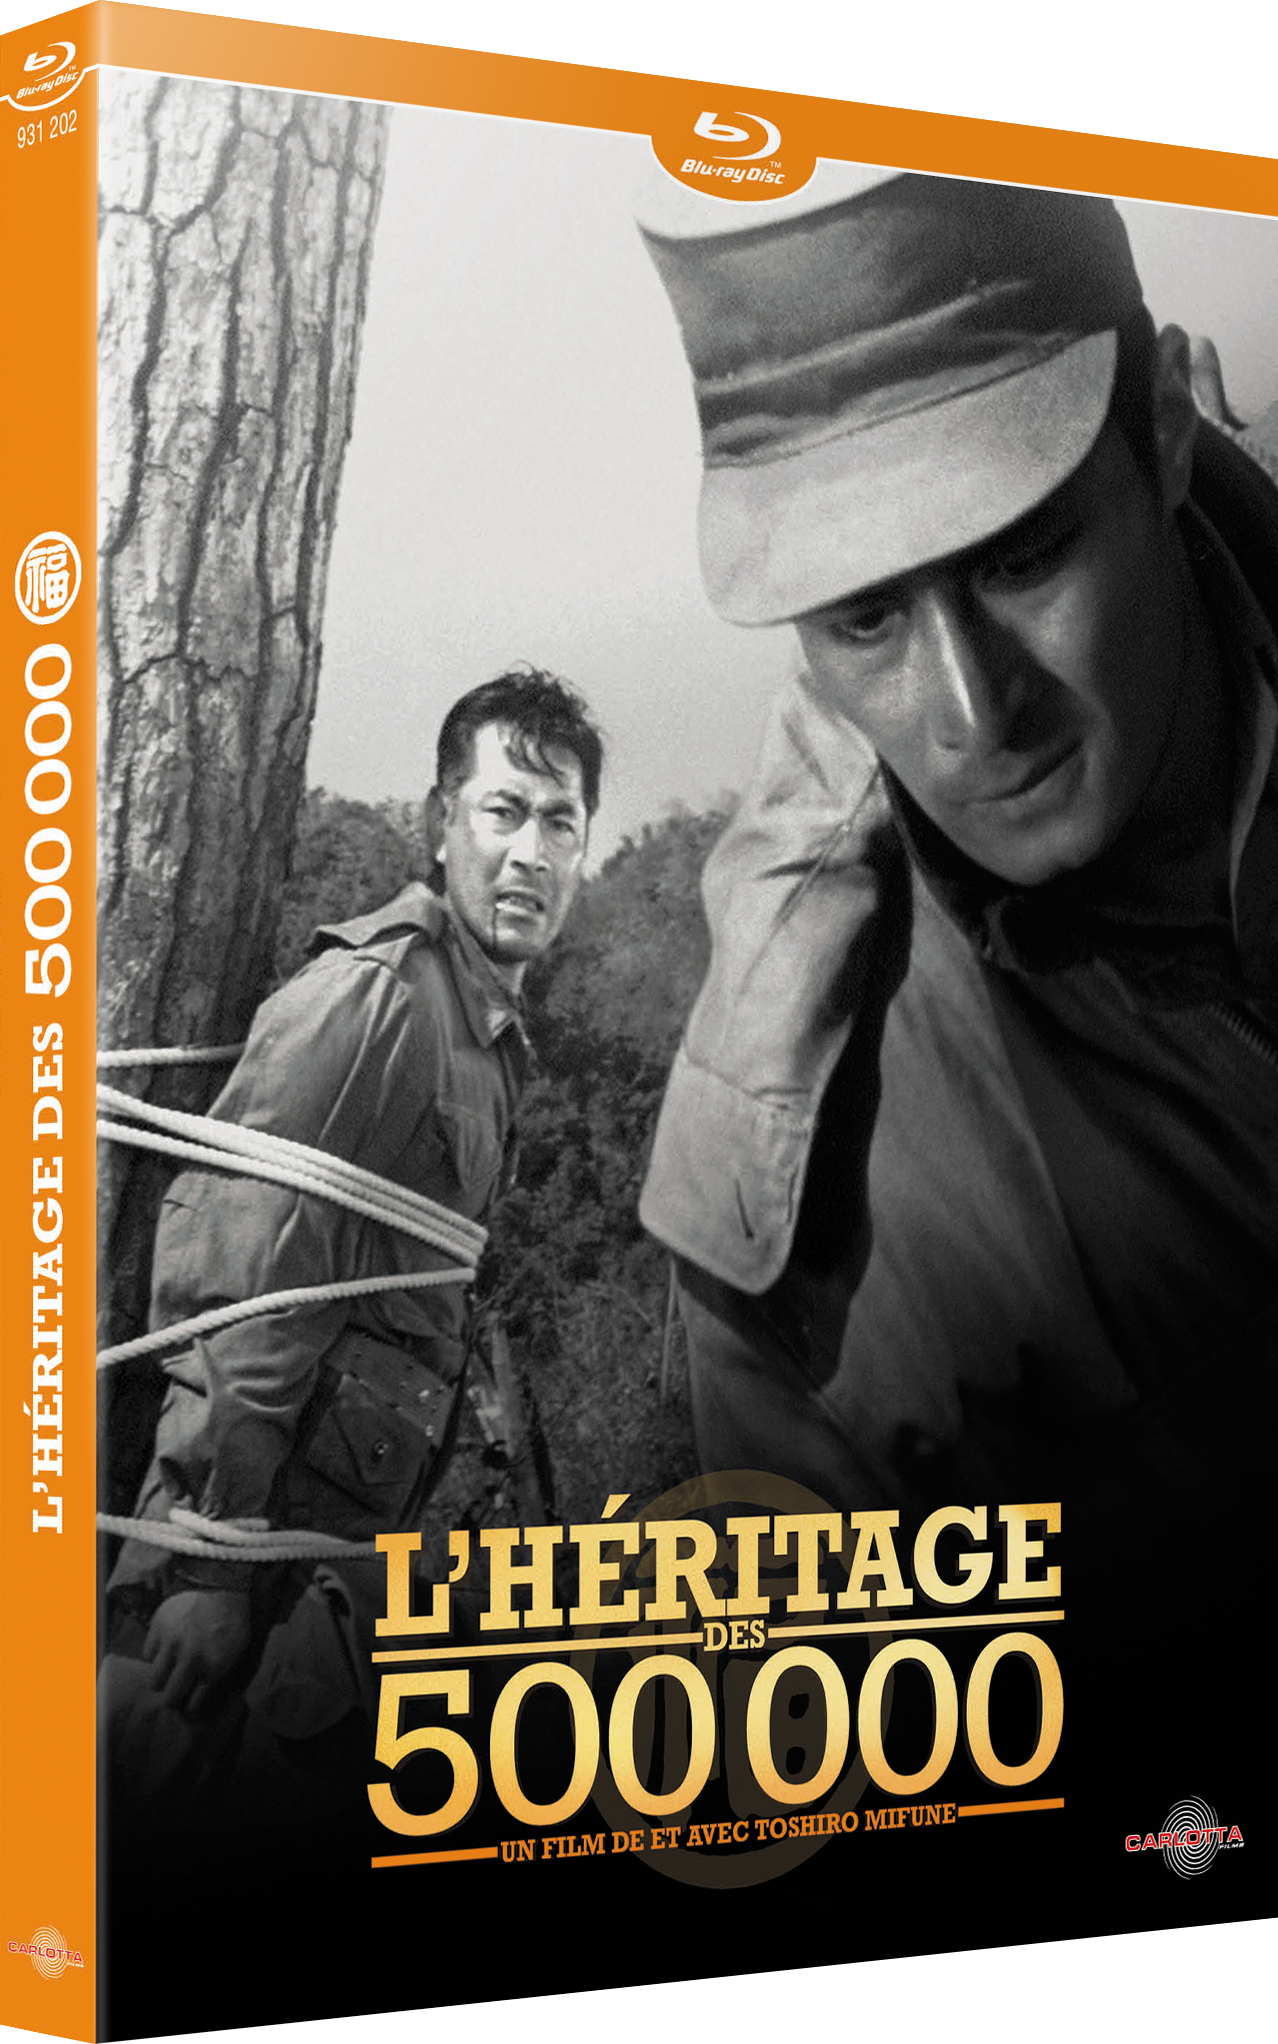 L’héritage des 500000 de et avec Toshiro Mifune sort en DVD et Blu-ray Disc.